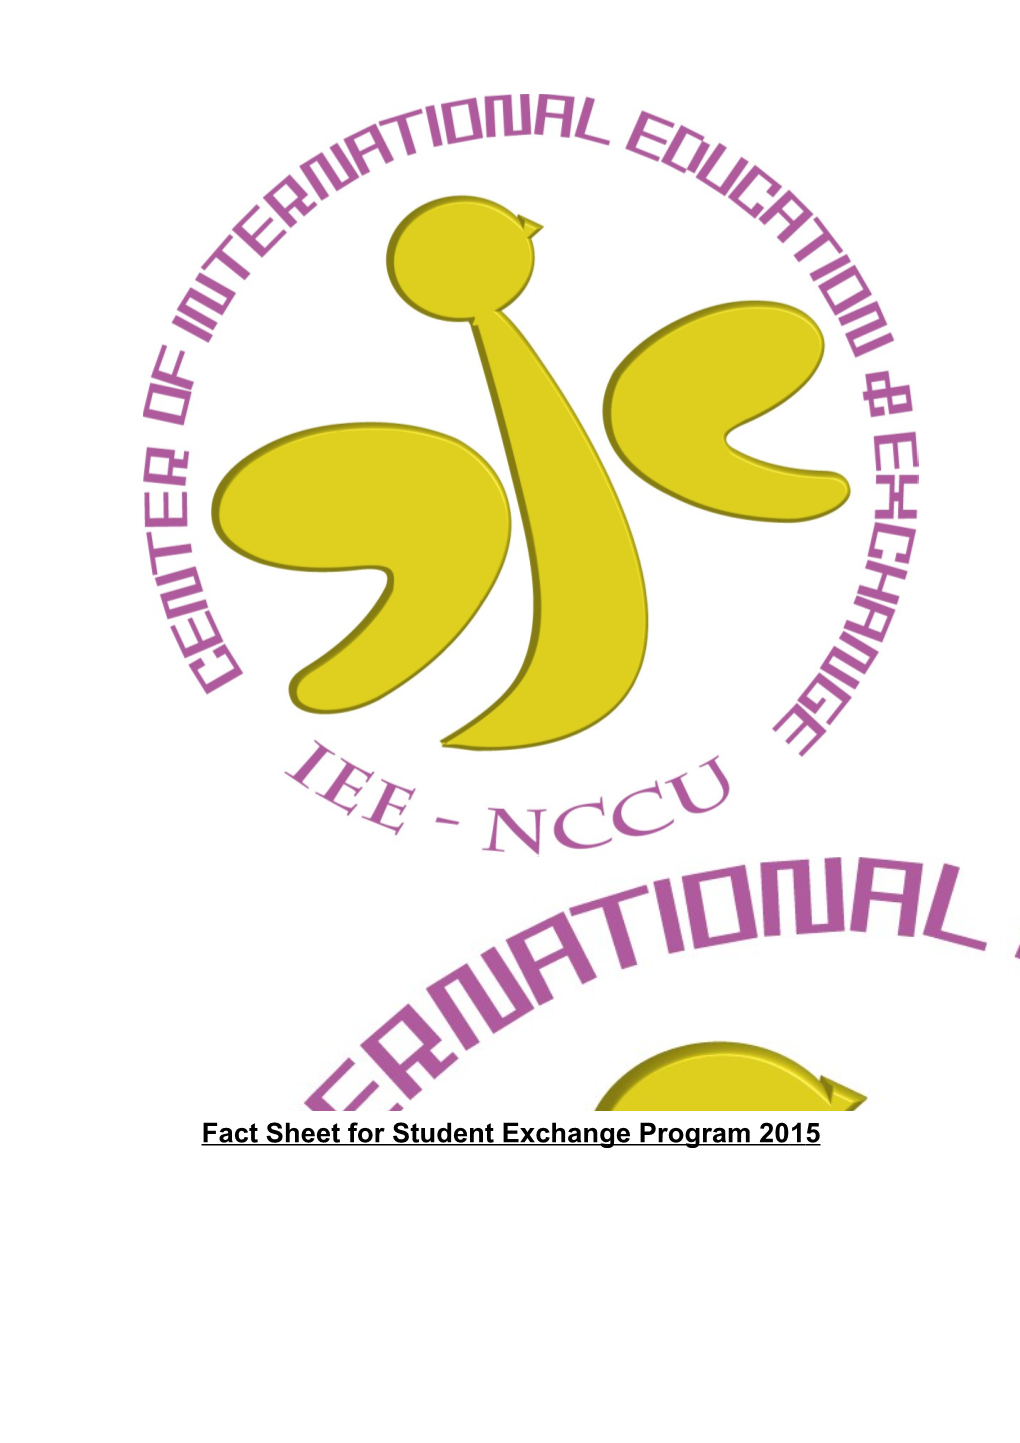 Fact Sheet for Student Exchange Program 2015